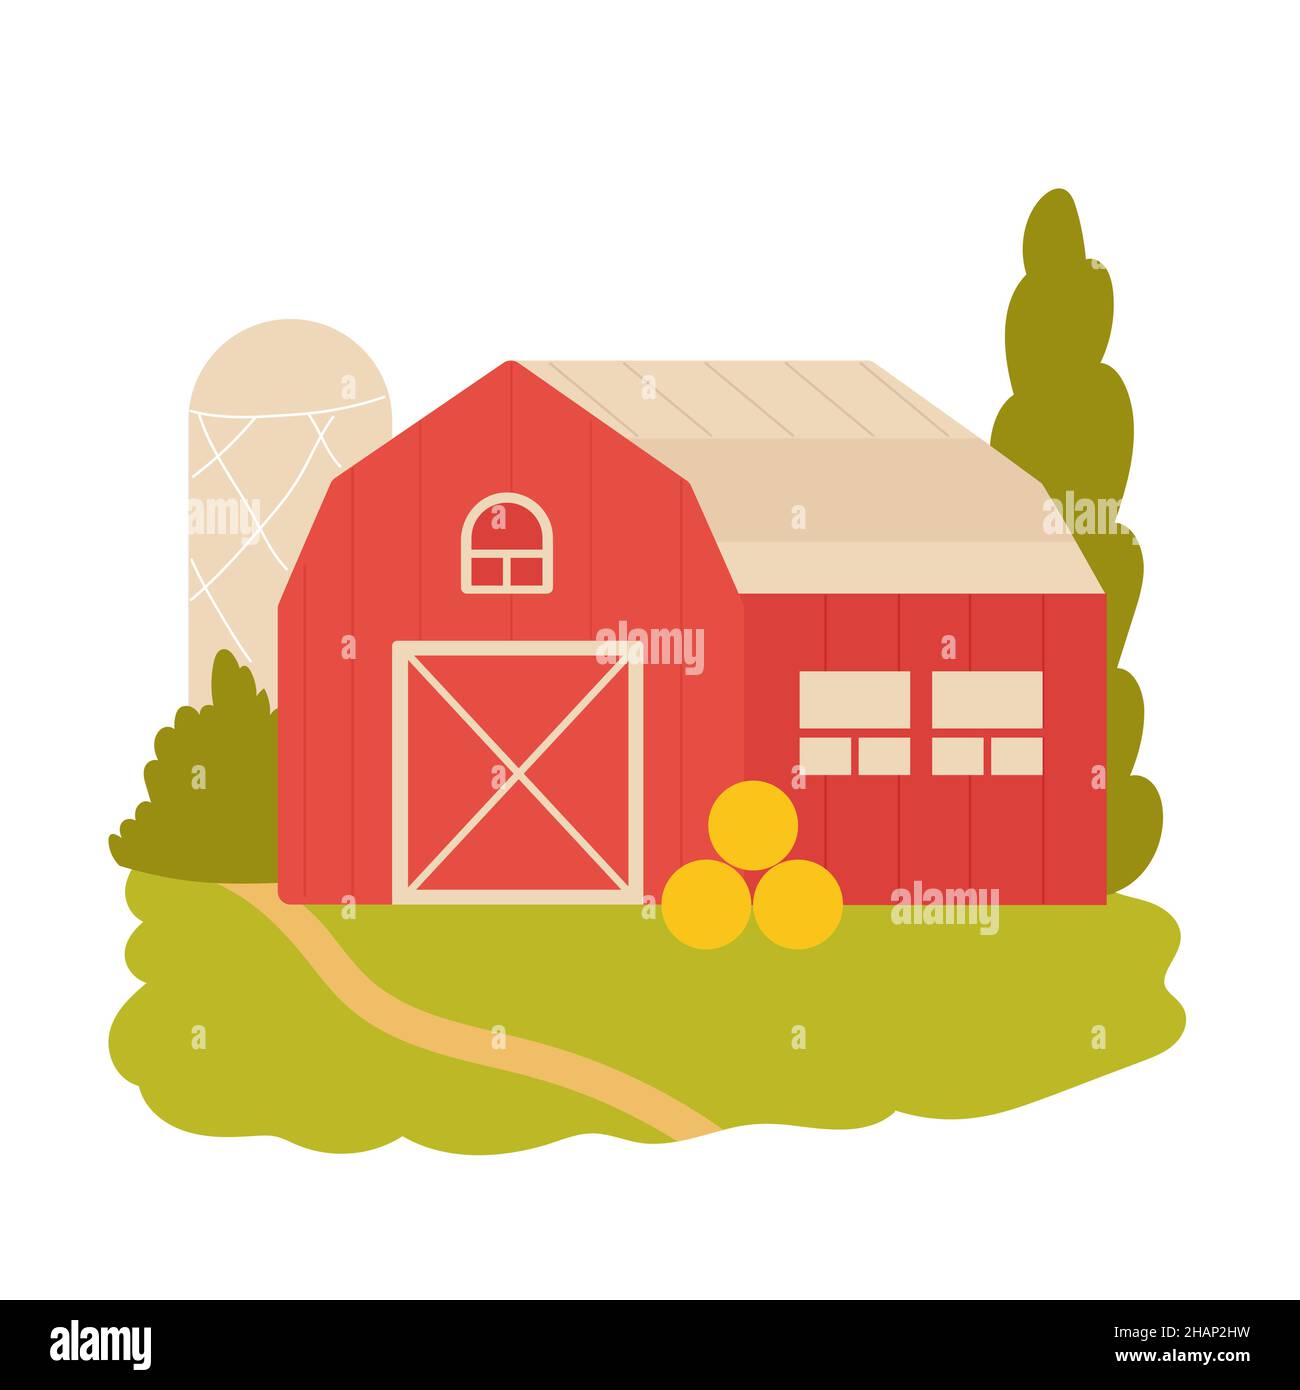 Ländliche ökologische Scheune und Lagergebäude. Landwirtschaftliche Lagerung und Landanbau Cartoon-Vektor-Illustration Stock Vektor